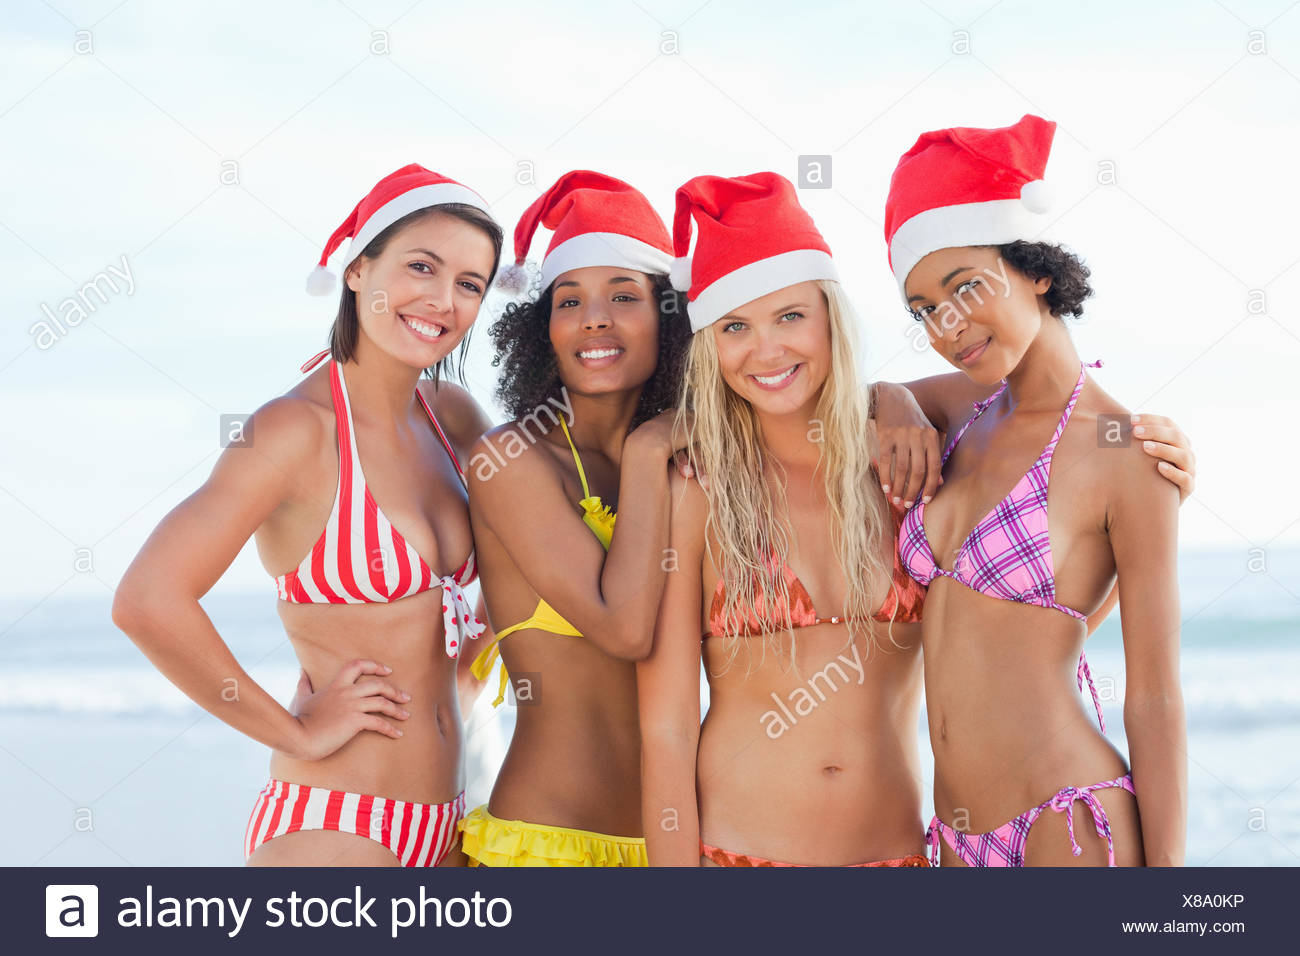 Mettere Cappello Di Natale Ad Una Foto.Quattro Donne Rosso Da Indossare Cappelli Di Babbo Natale Mentre In Piedi Su Una Spiaggia In Bikini Foto Stock Alamy